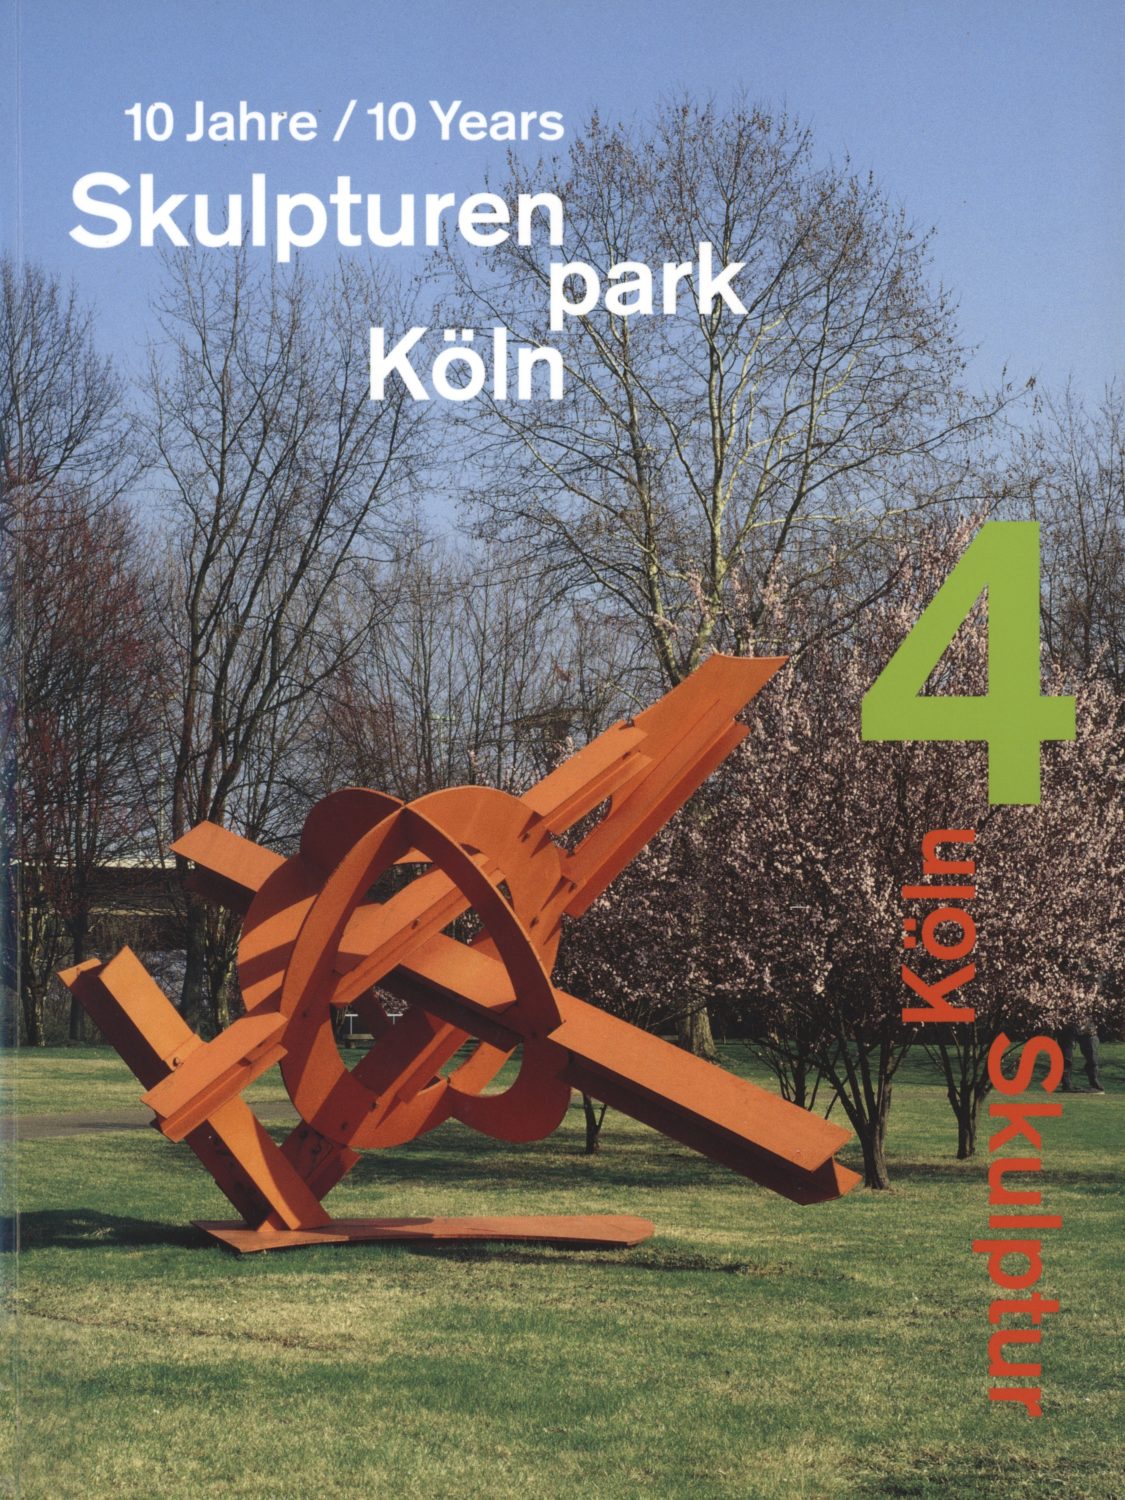 10 Jahre/10 Years Skulpturen park Köln 1997 – 2007